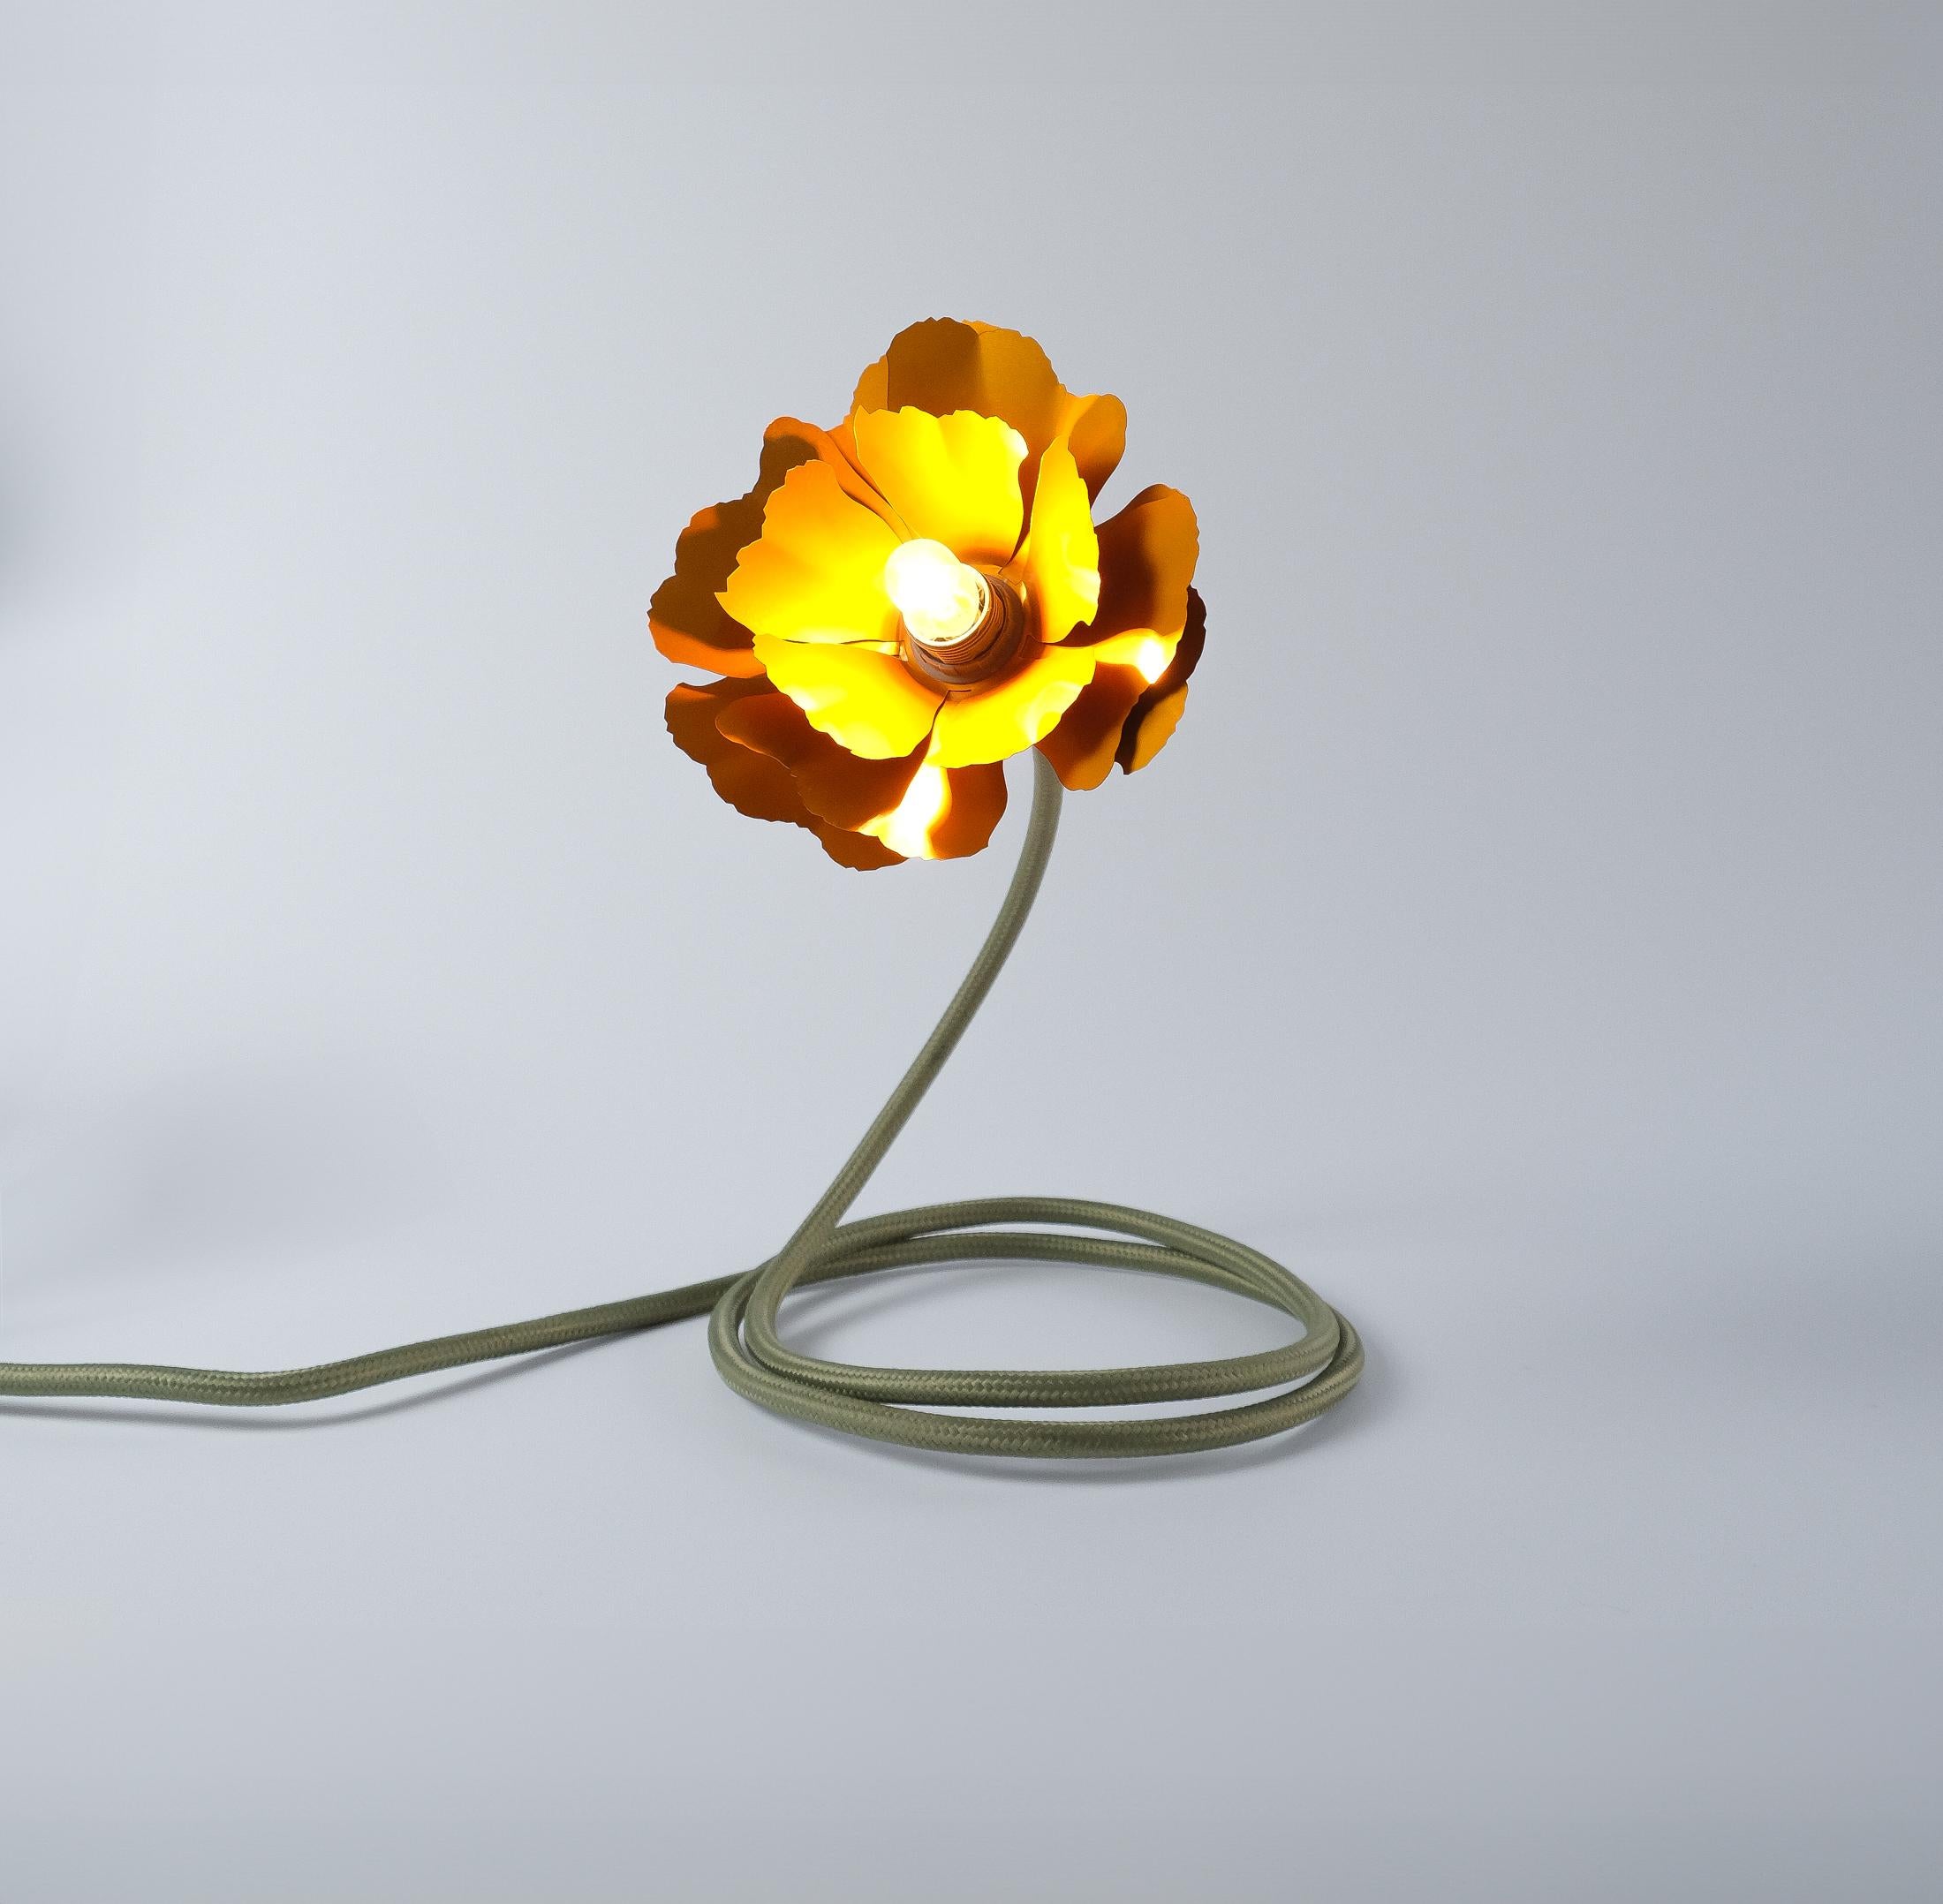 Helena Christensen's Flexible Flower Lamp for Habitat “V.I.P” Collection, 2004 For Sale 3